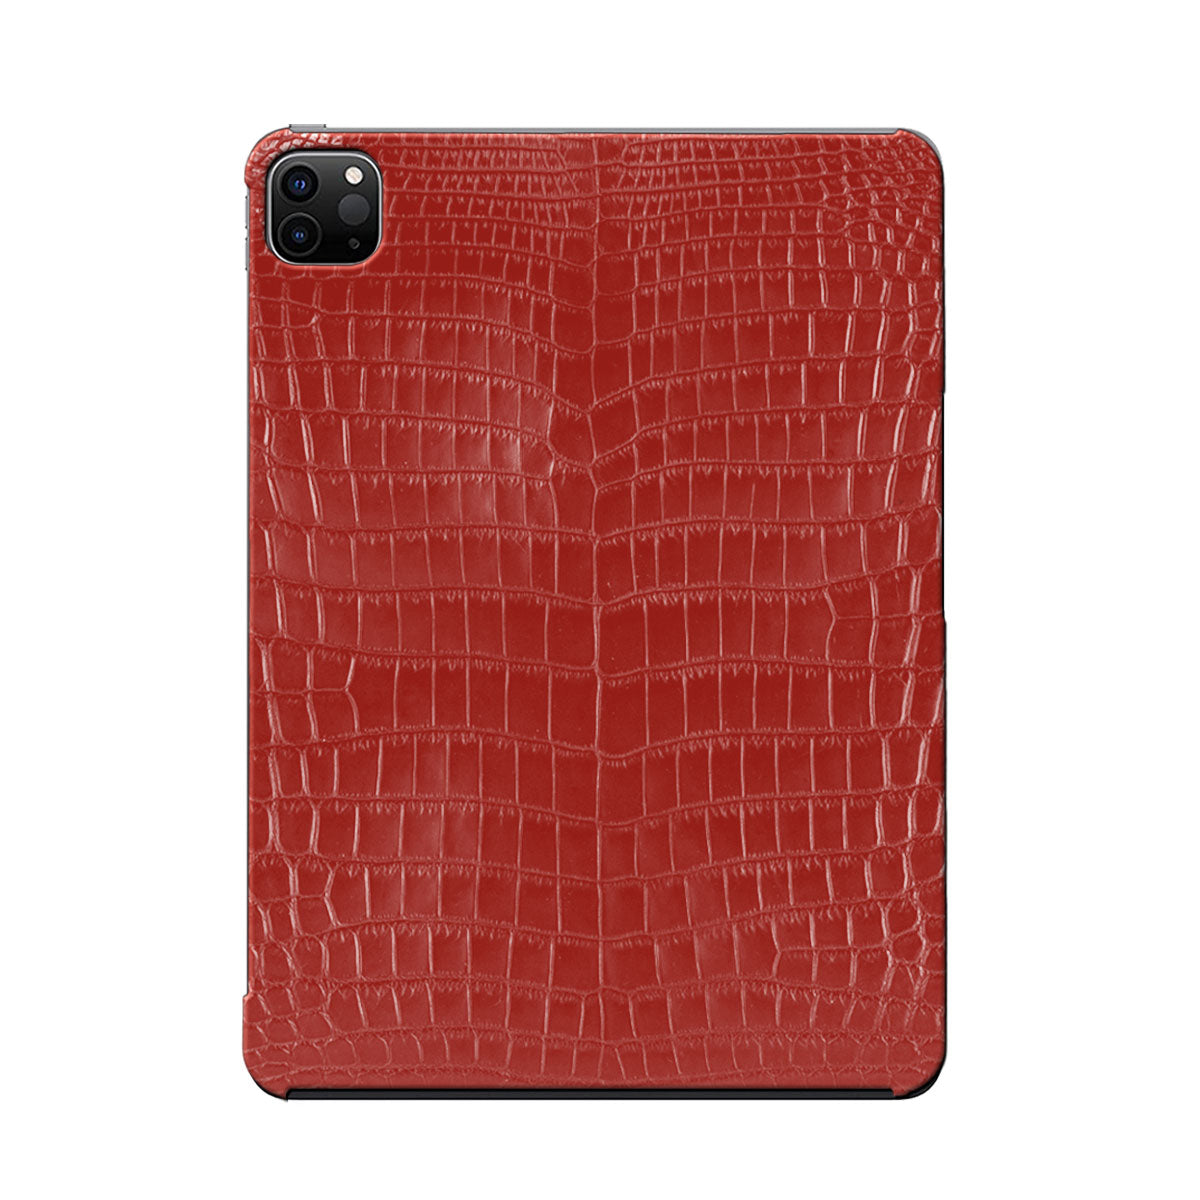 Coque / Cover cuir pour iPad Pro 10.5 & 11 pouces ( 2e / 3e / 4e génération ) - Alligator